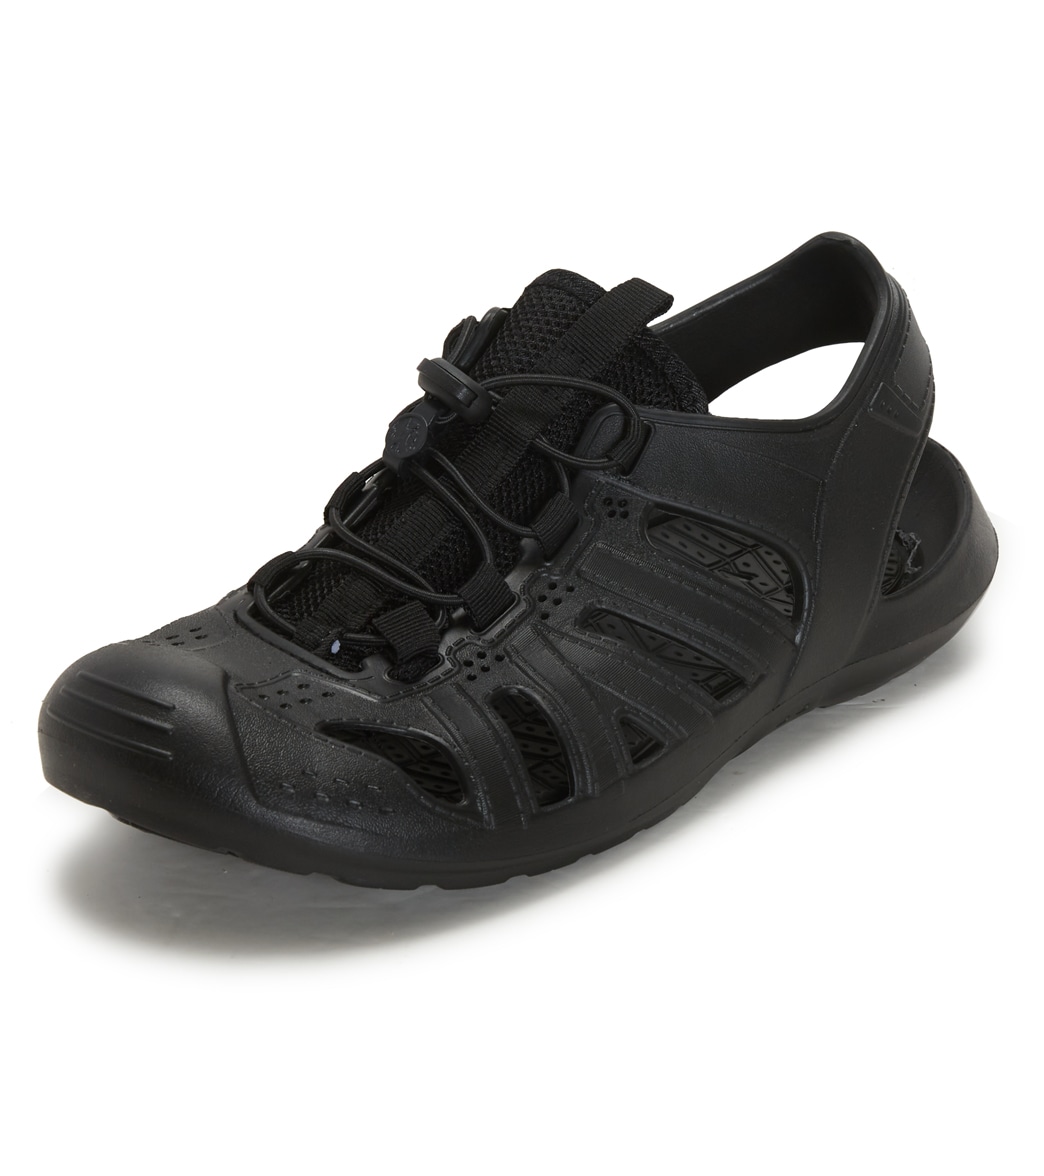 Northside Men's Pacific Drift Water Shoes - Black 080 - Swimoutlet.com